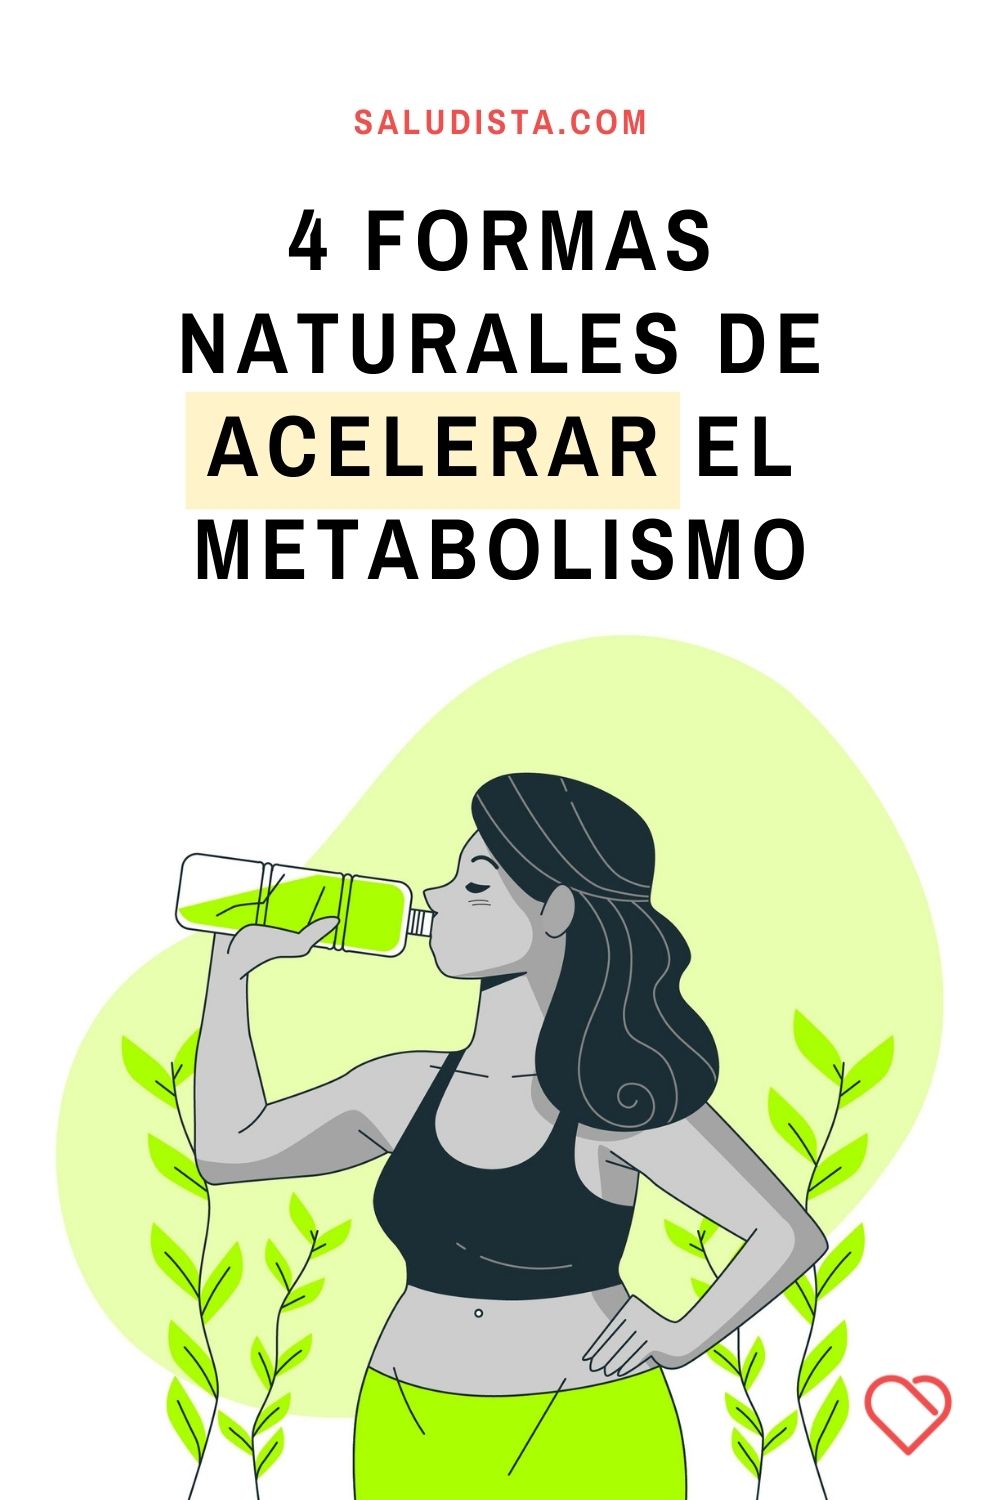 4 formas naturales de acelerar el metabolismo